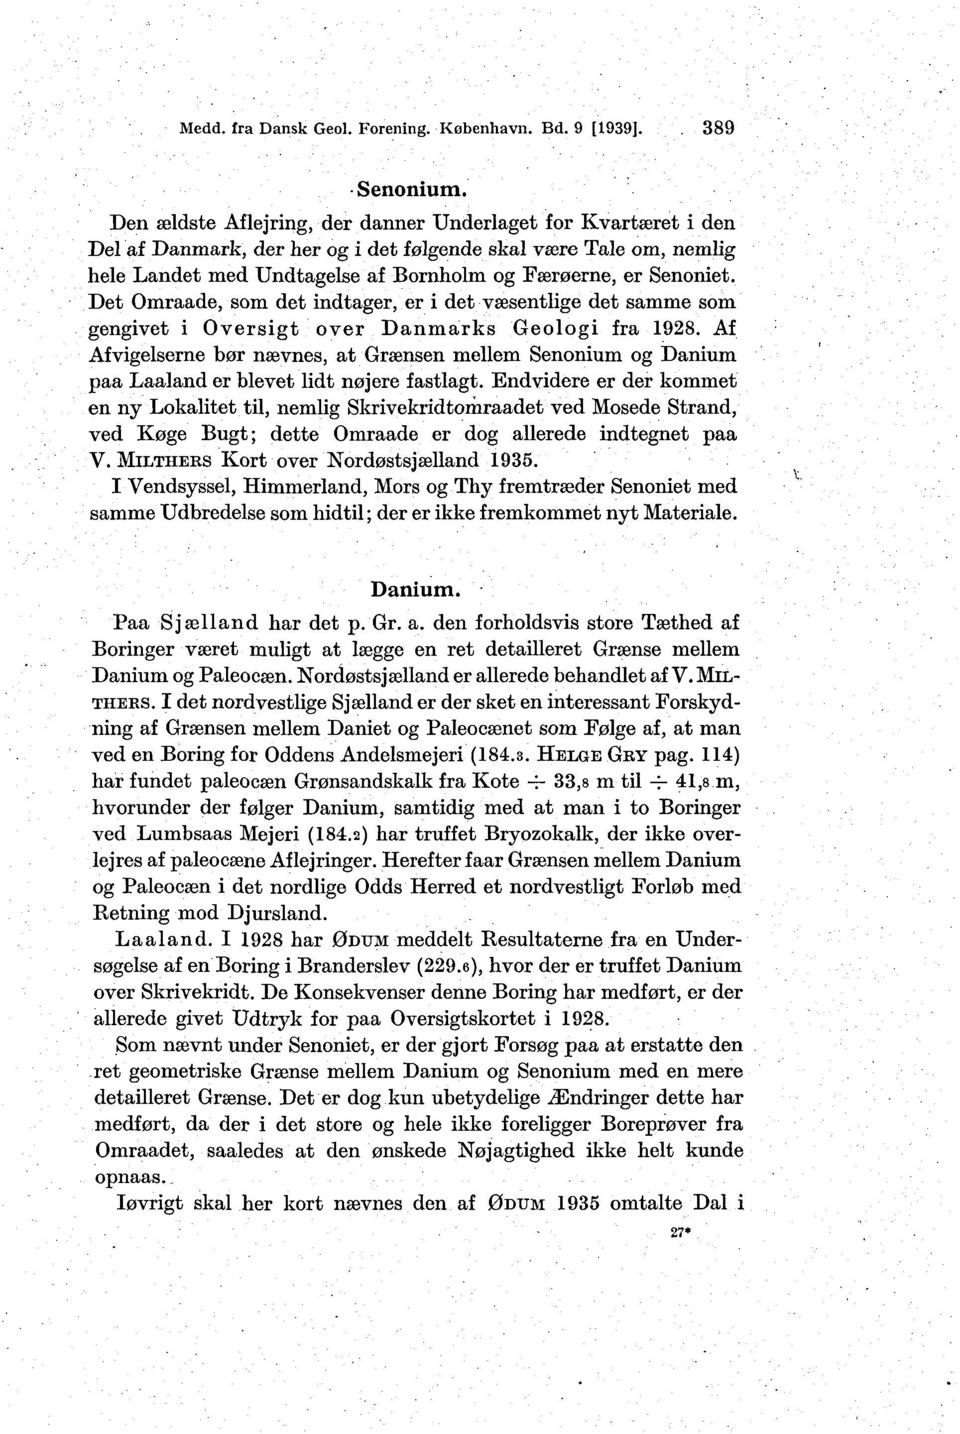 Det Omraade, som det indtager, er i det væsentlige det samme som gengivet i Oversigt over Danmarks Geologi fra 1928.